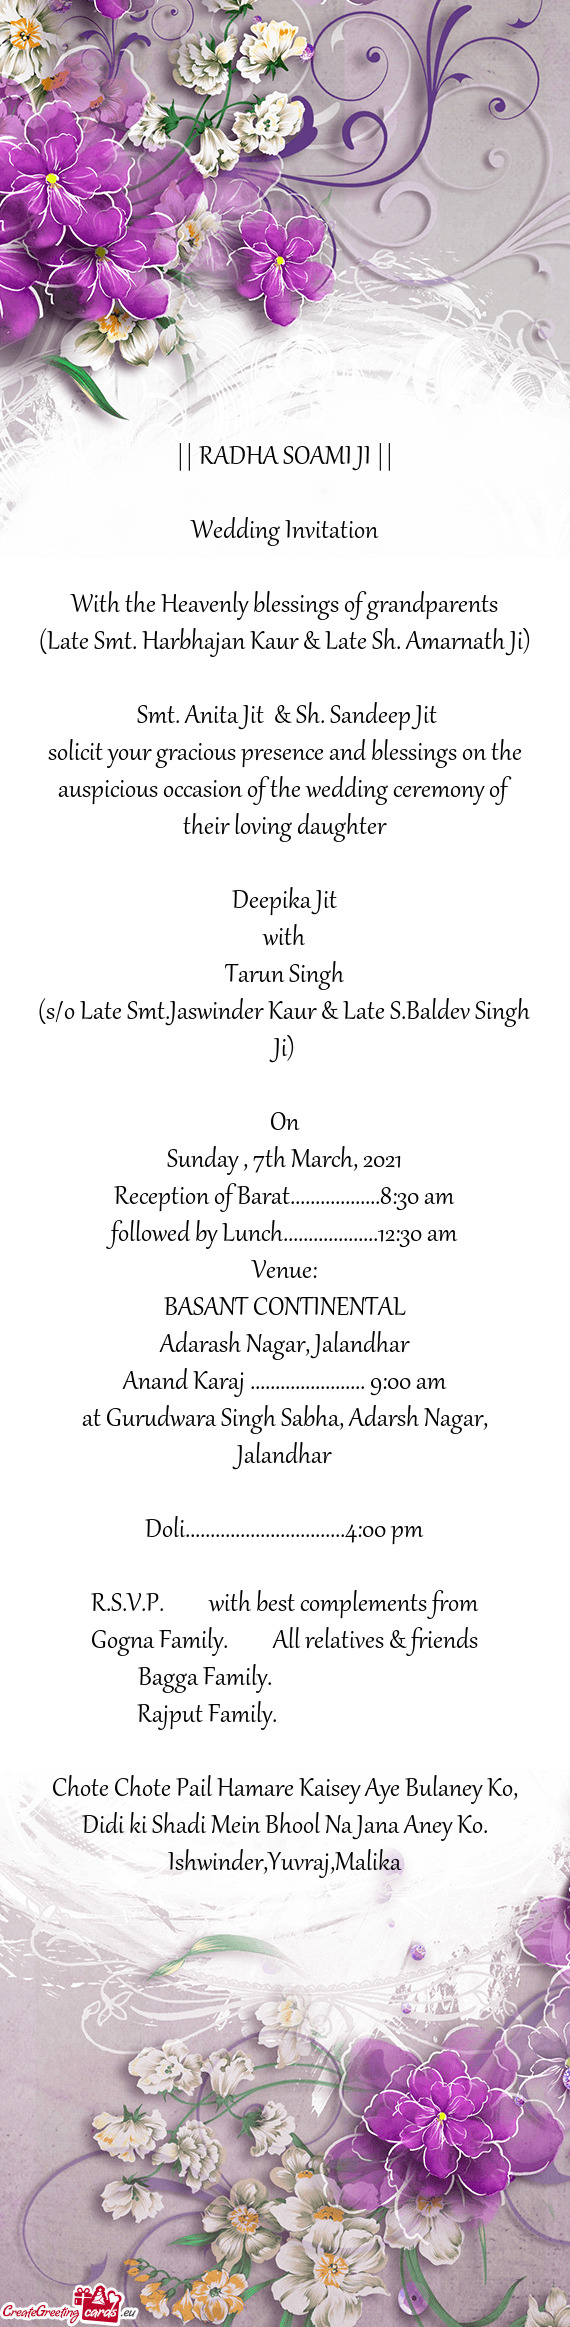 (Late Smt. Harbhajan Kaur & Late Sh. Amarnath Ji)